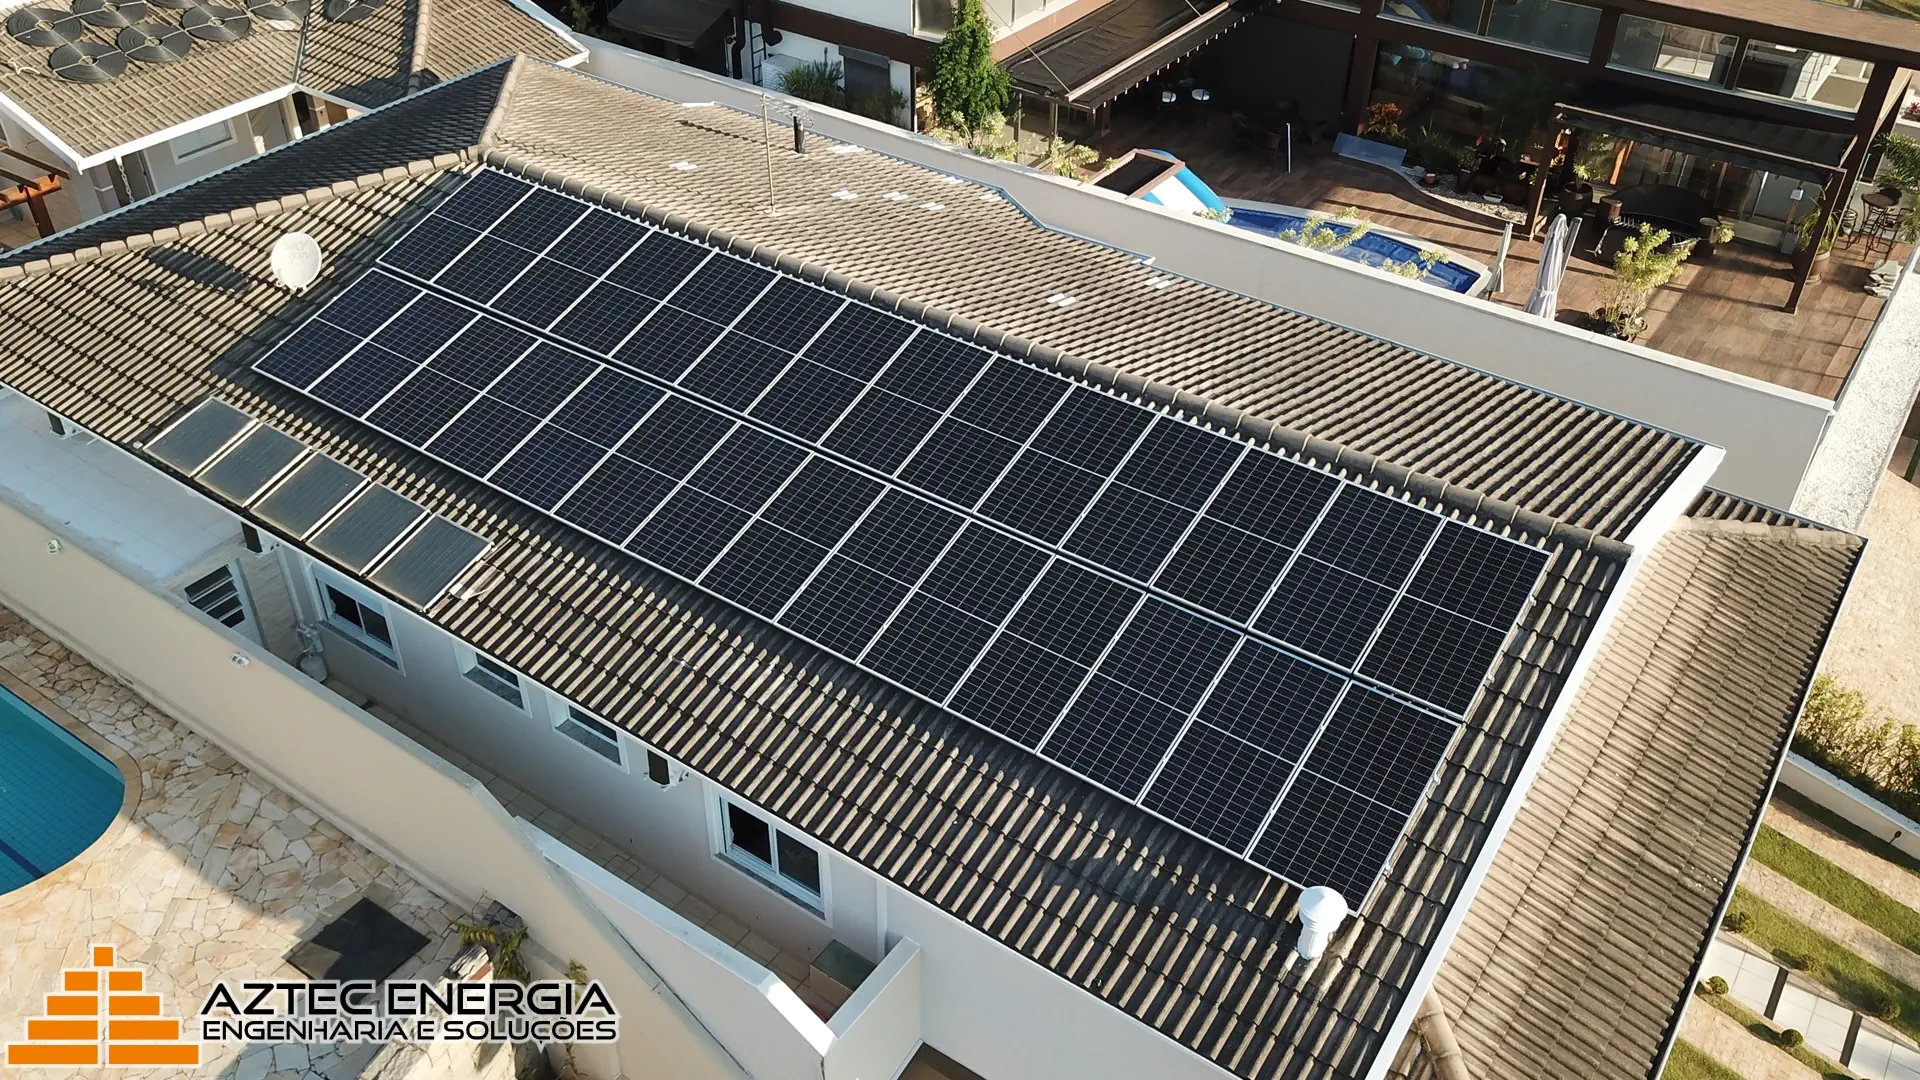 Vinte e oito módulos de energia solar em uma residência de Colinas de São Francisco.